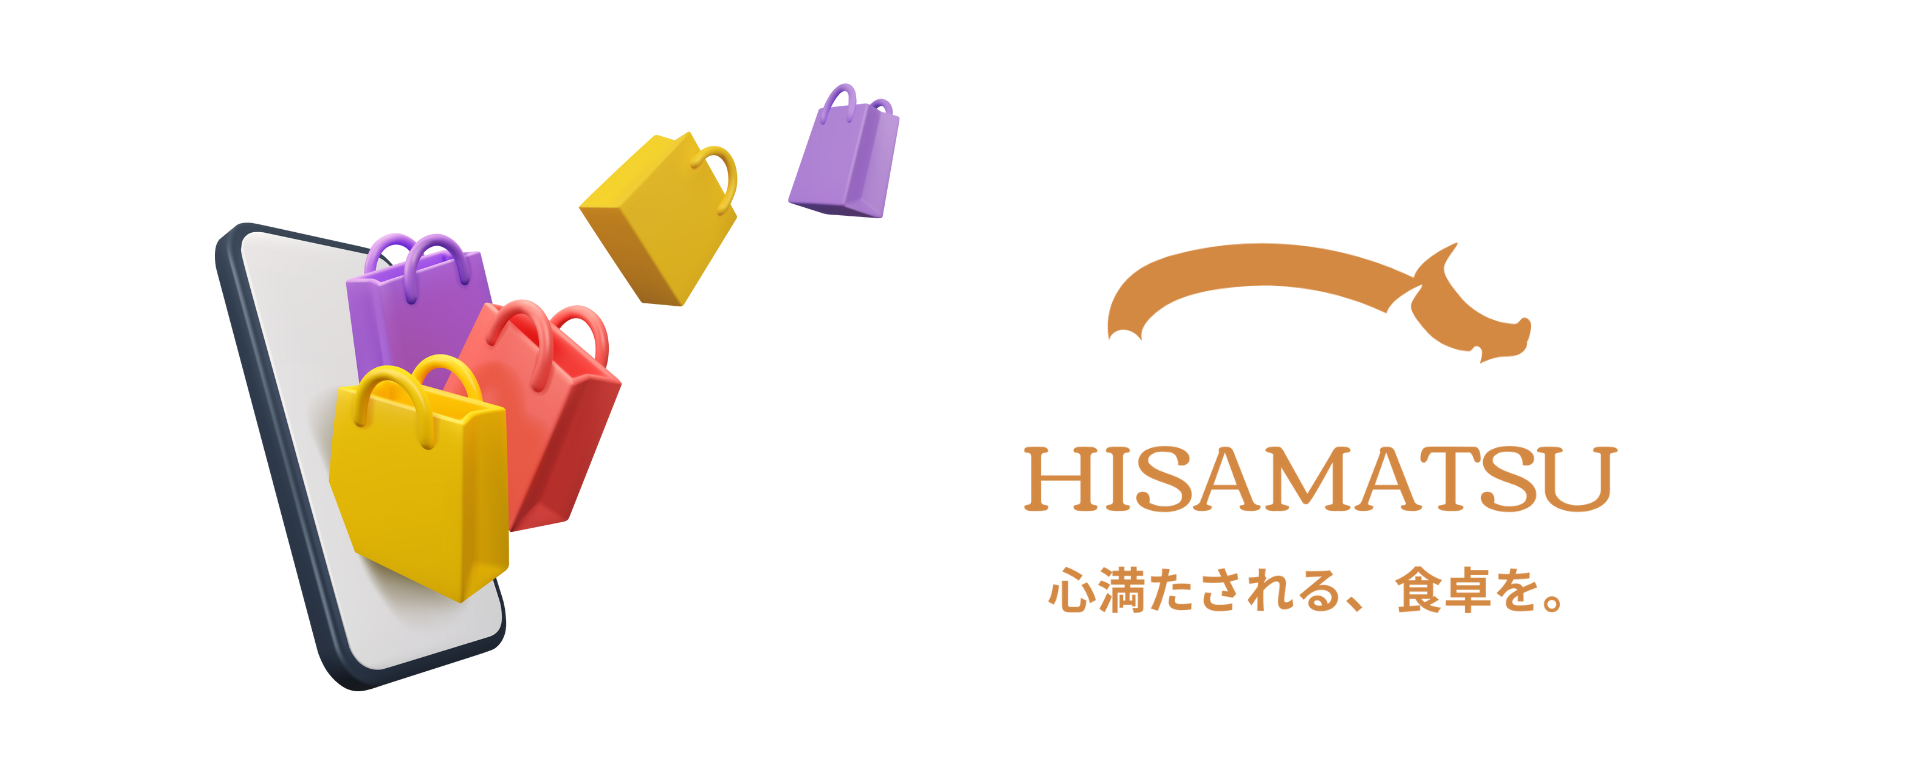 動画を読み込む: ハム工房HISAMATSUの「ハム造り」の商品説明を補足するための動画